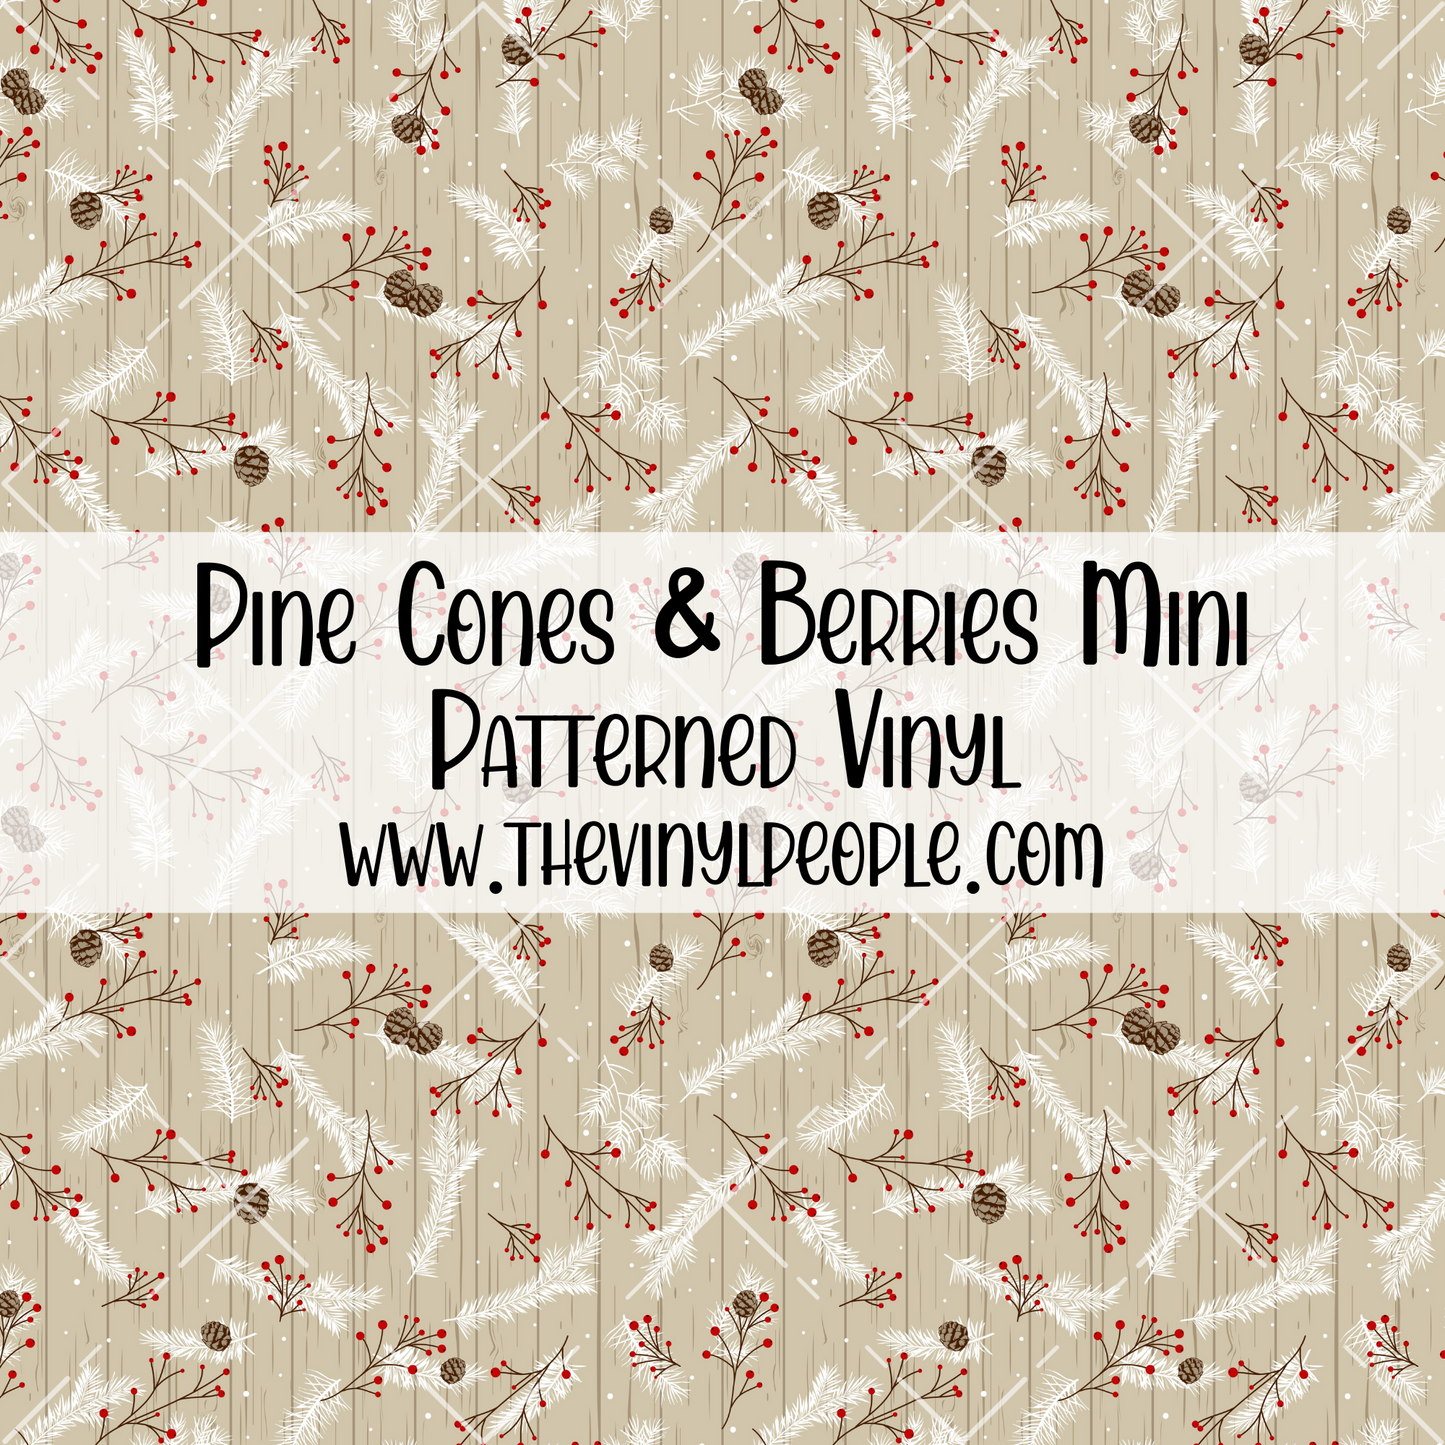 Pine Cones & Berries Patterned Vinyl